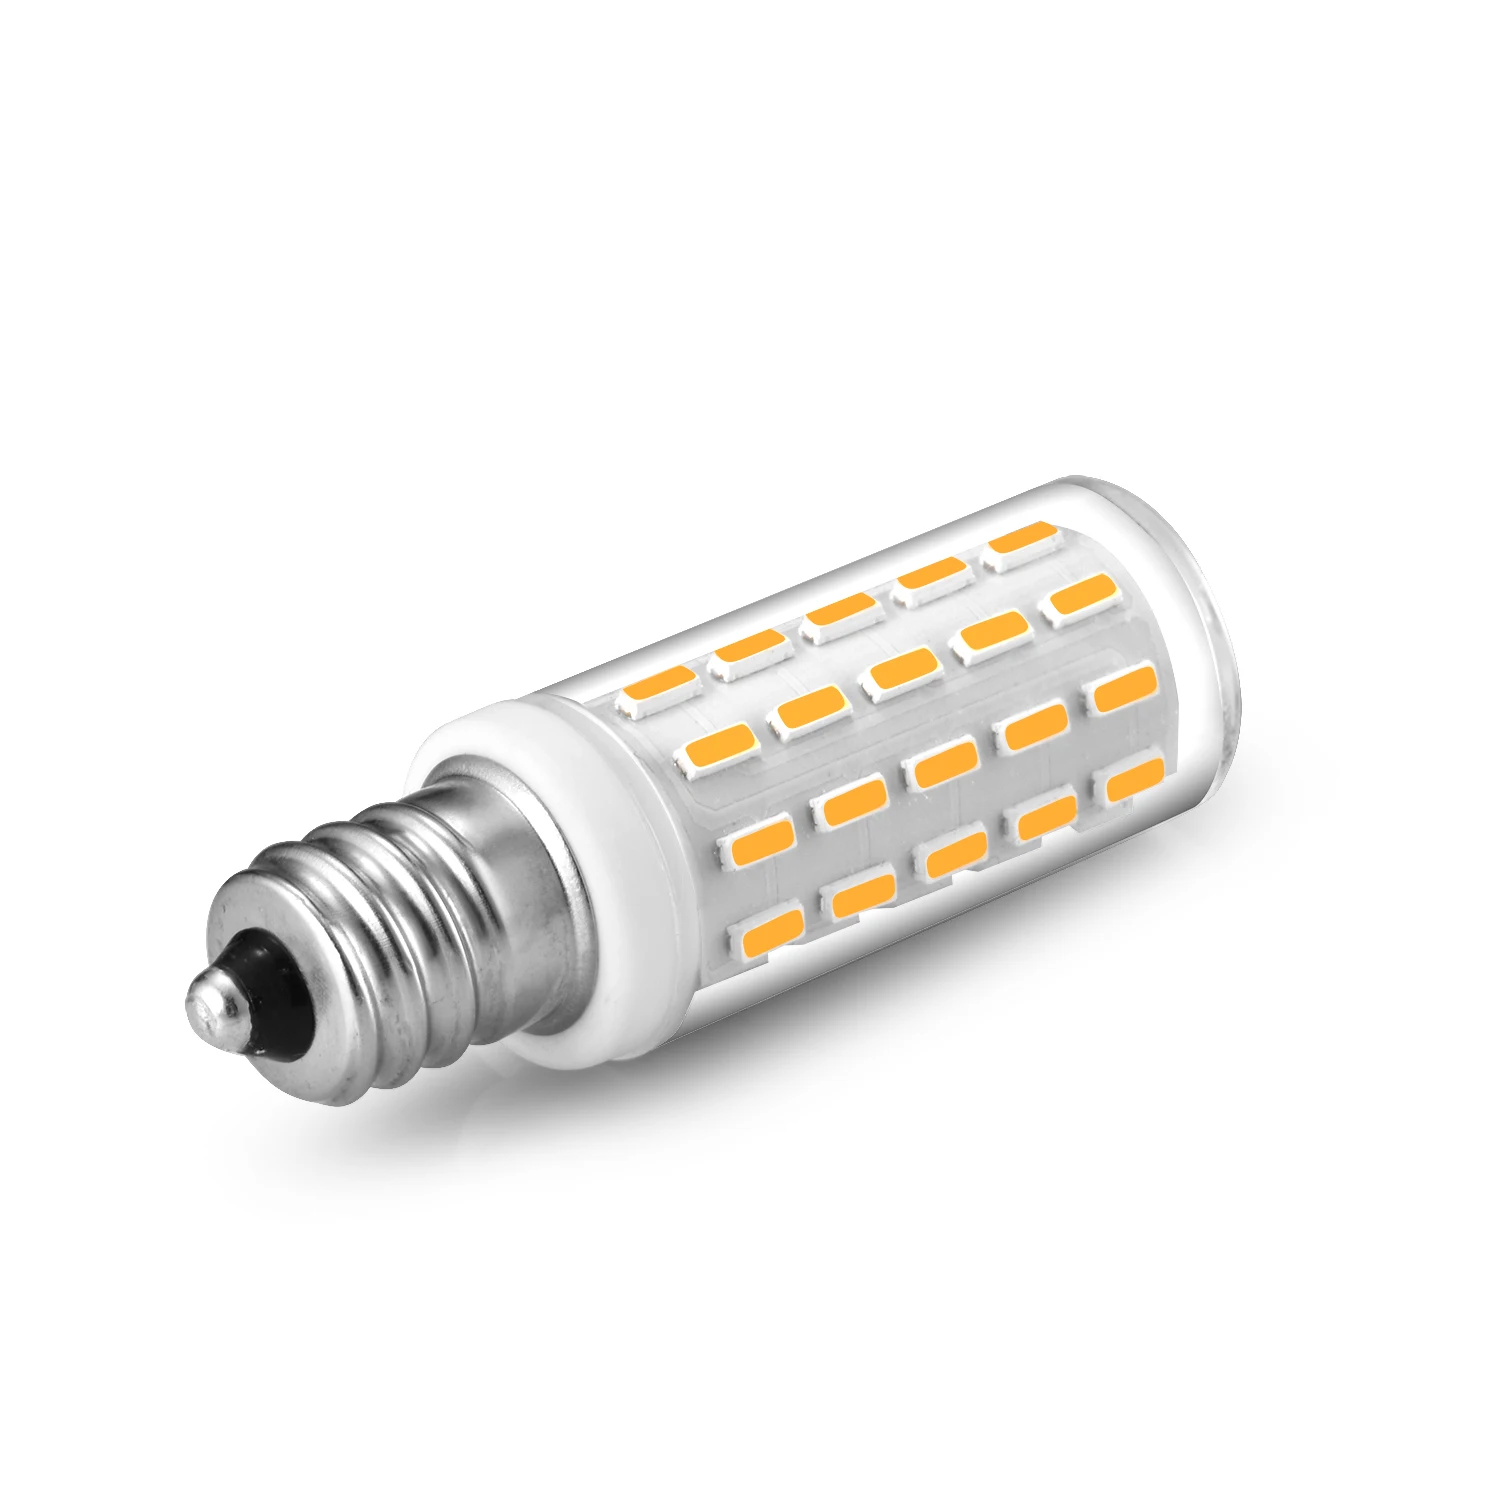 3W Mini E12 LED Corn Light Bulb AC110V AC220V Energy Saving C7 Candelabra Bulbs for Home Ceiling Fan Chandelier